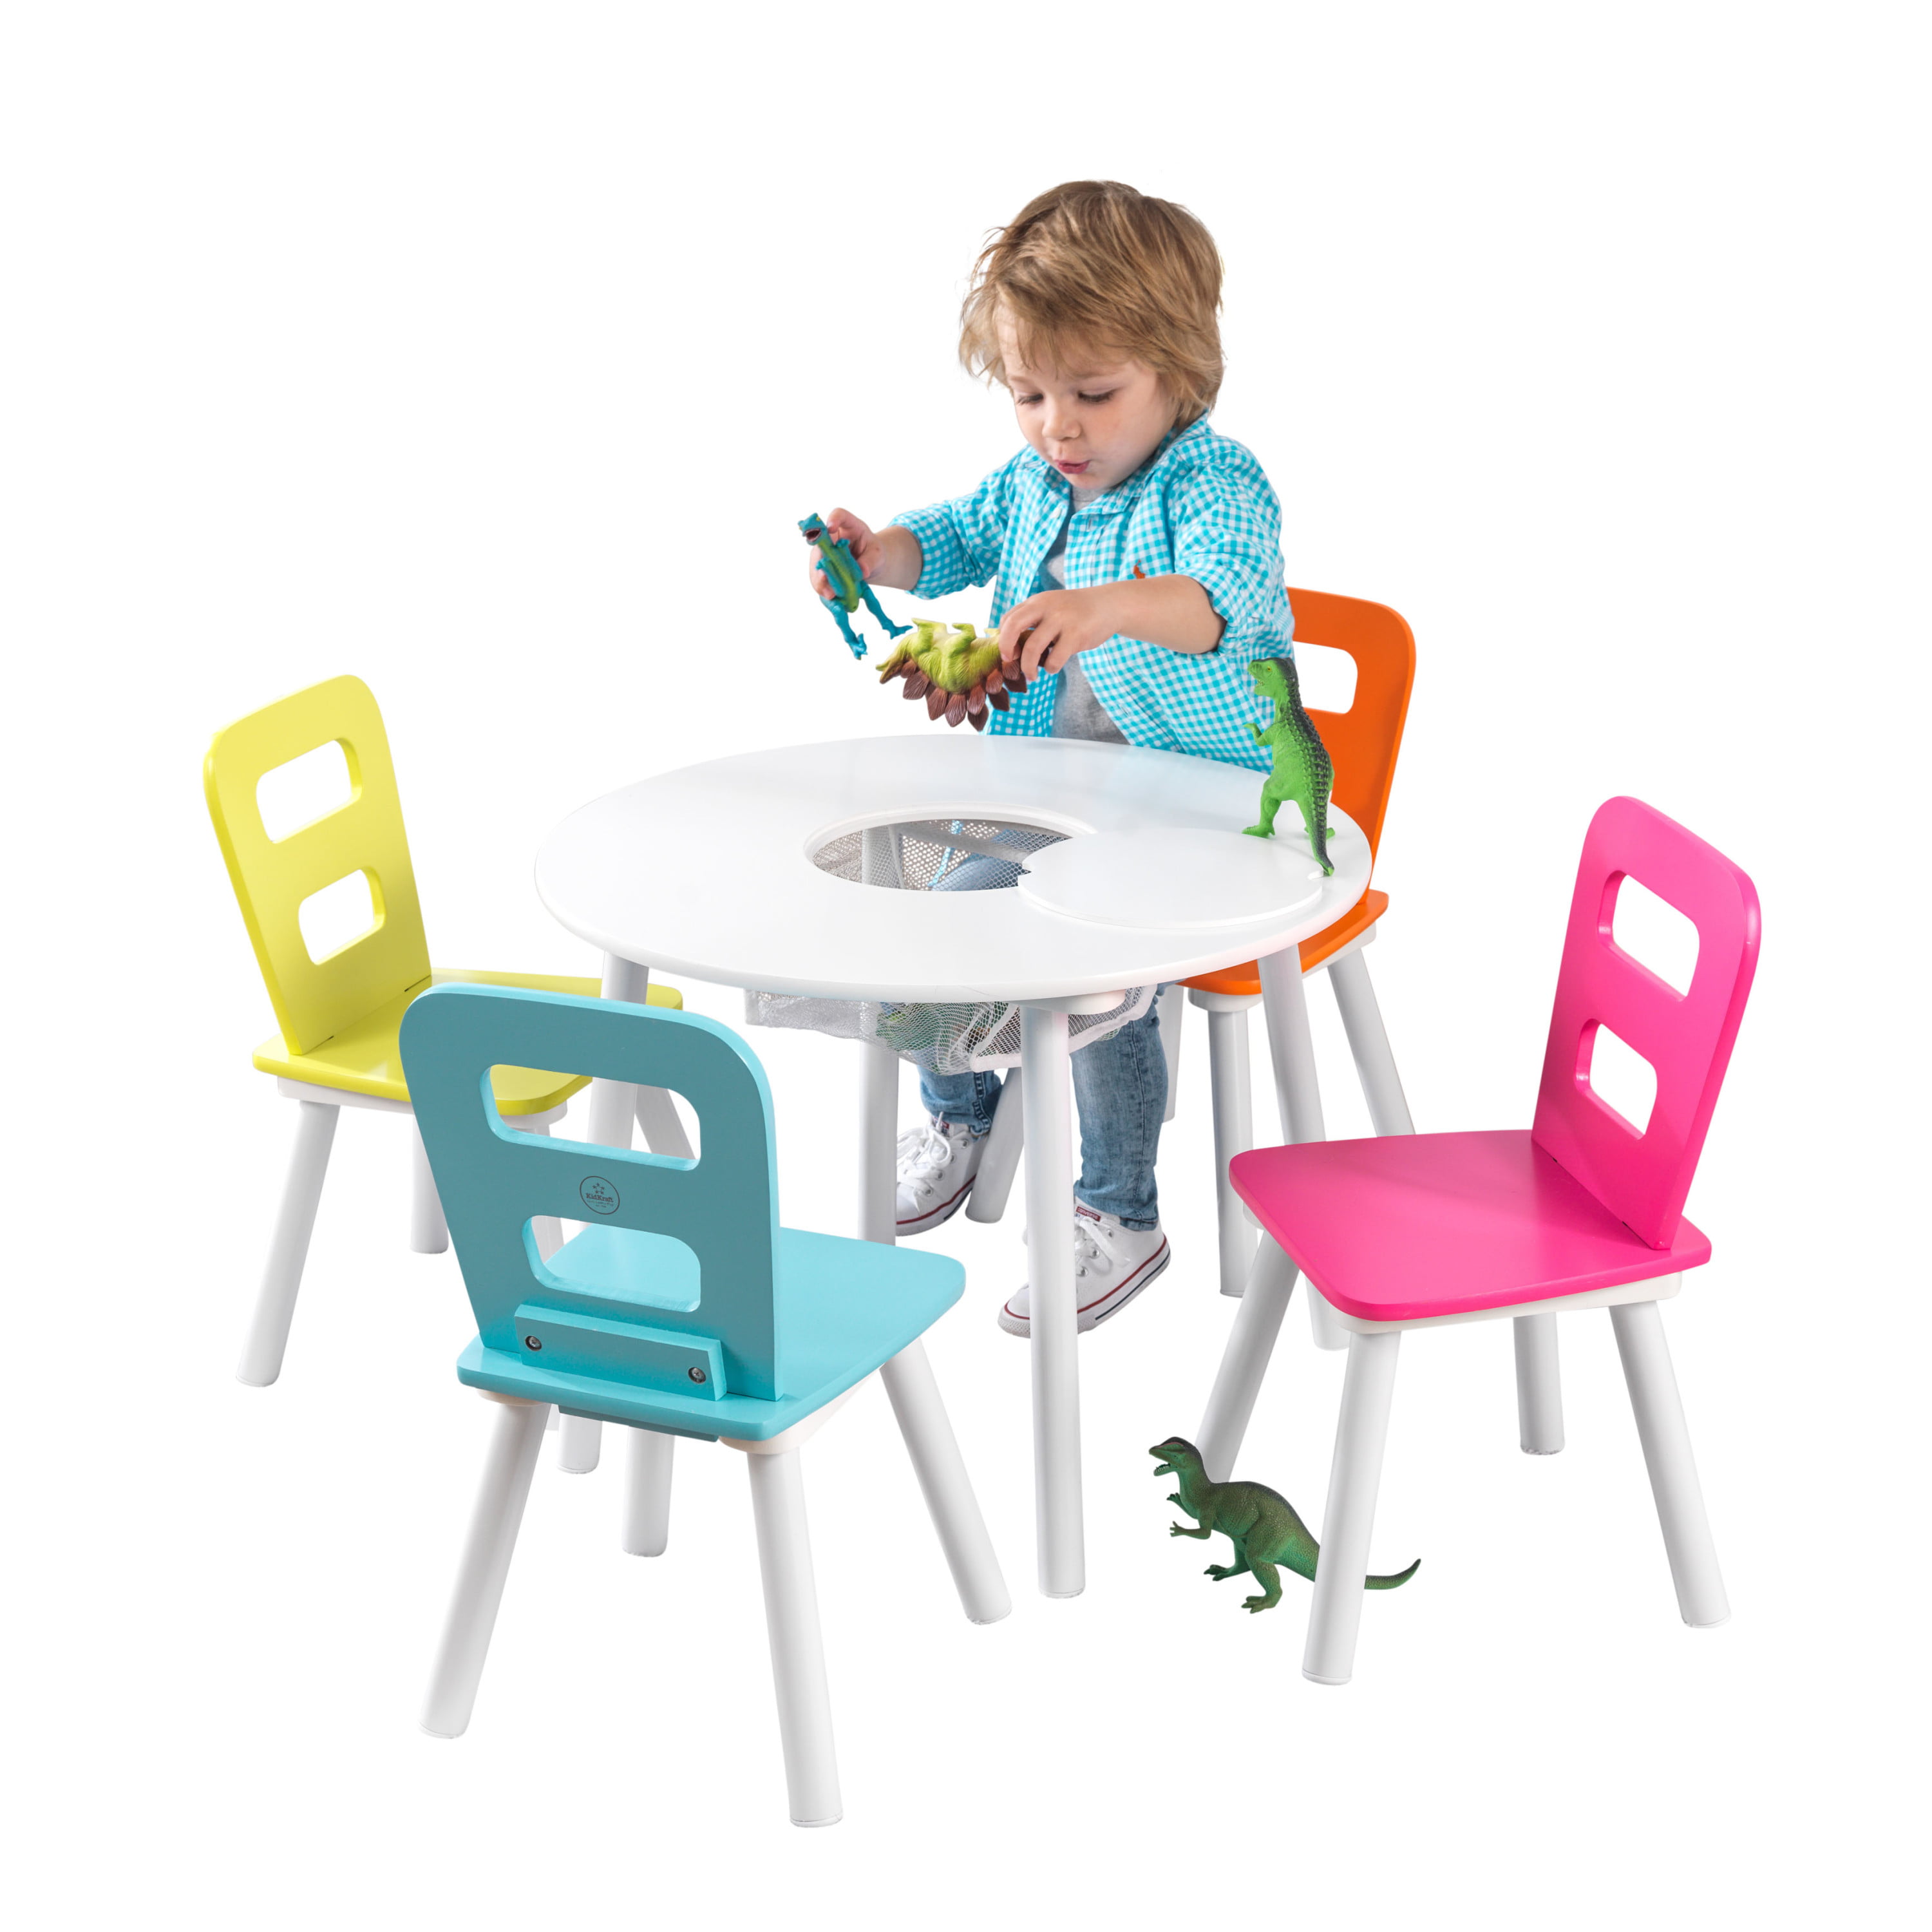 Kidkraft kidkraft wooden toddler Baby Children’s table 